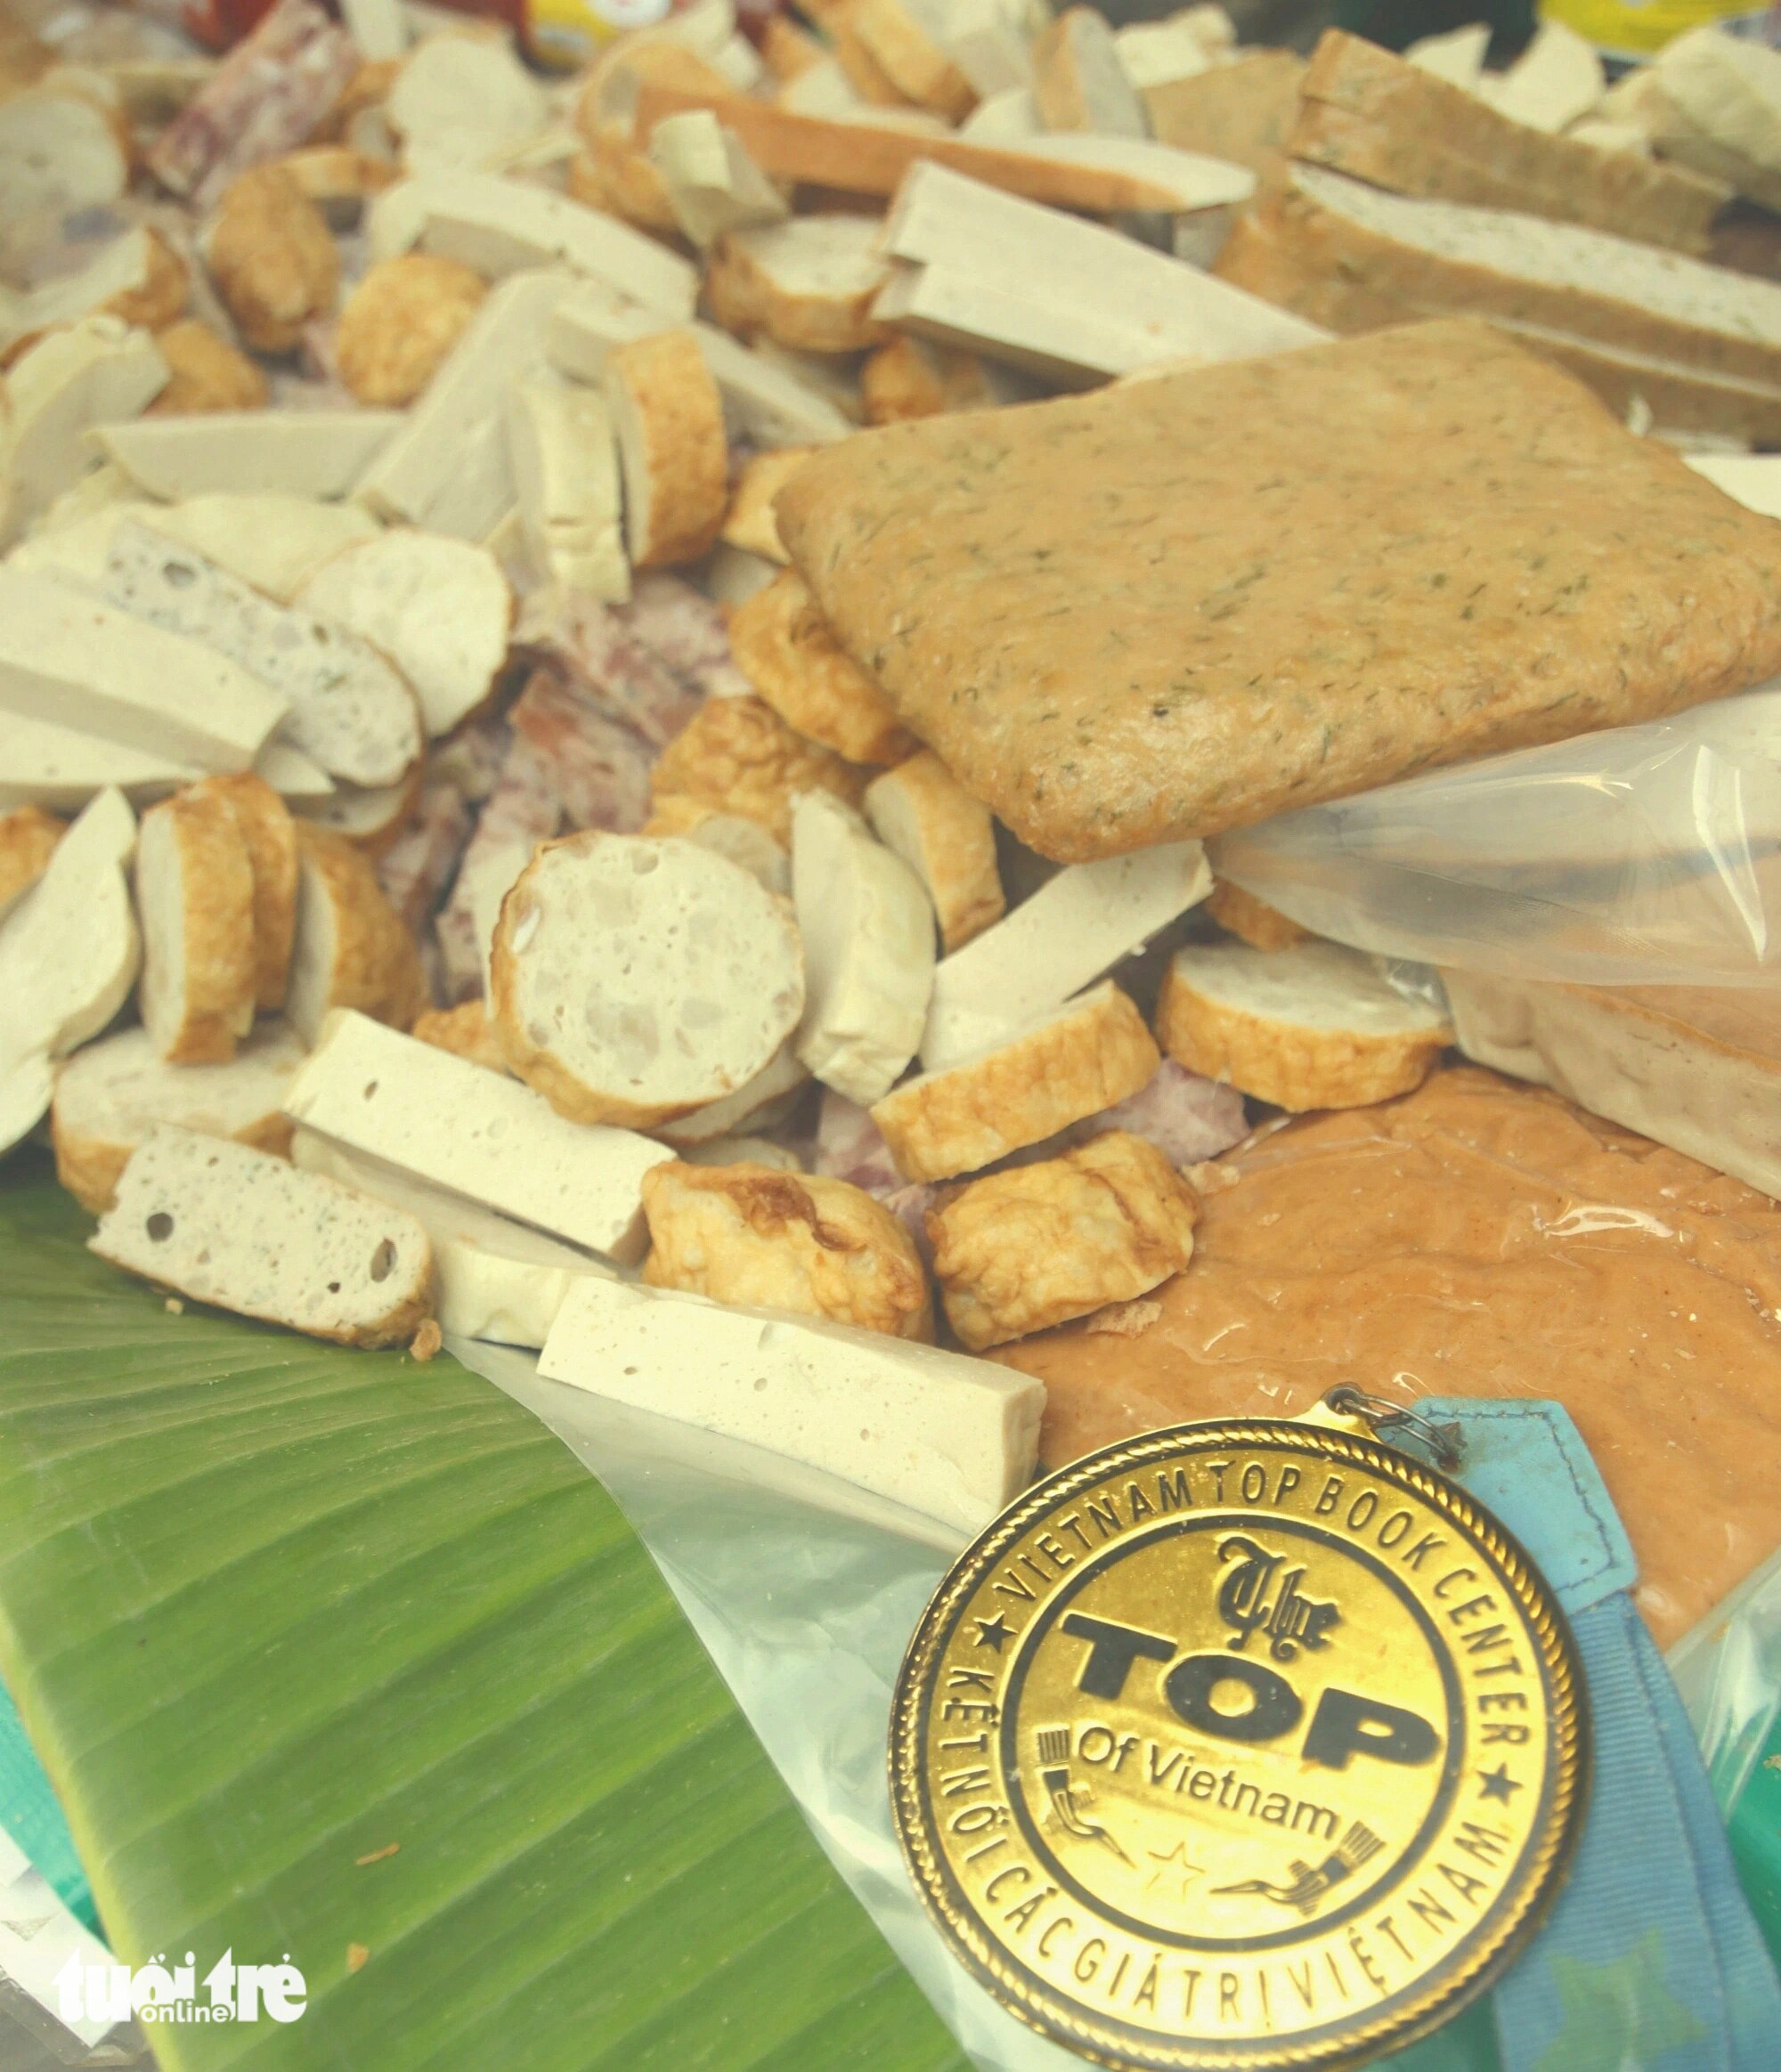 Bánh mì cụ Lý vừa được công nhận là một trong những thương hiệu bánh mì nổi tiếng và lâu đời tại Sài Gòn.